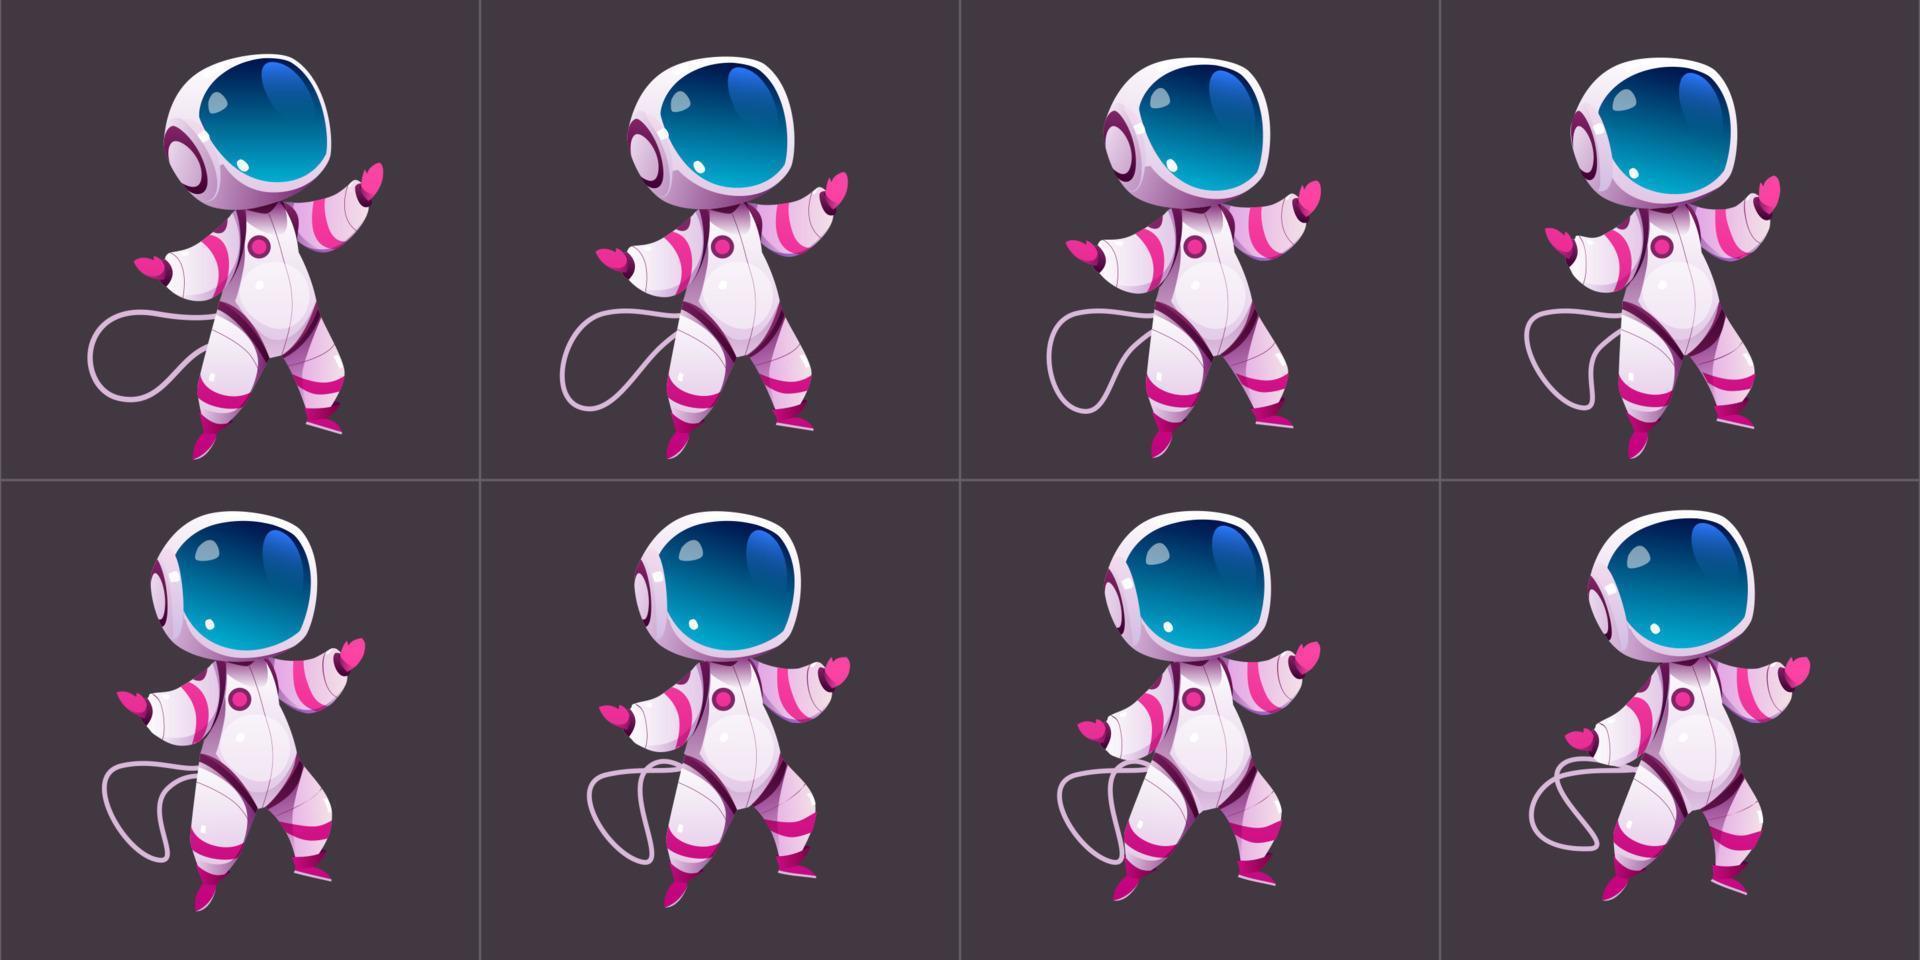 Animations-Sprite-Blatt des gehenden niedlichen Astronauten vektor